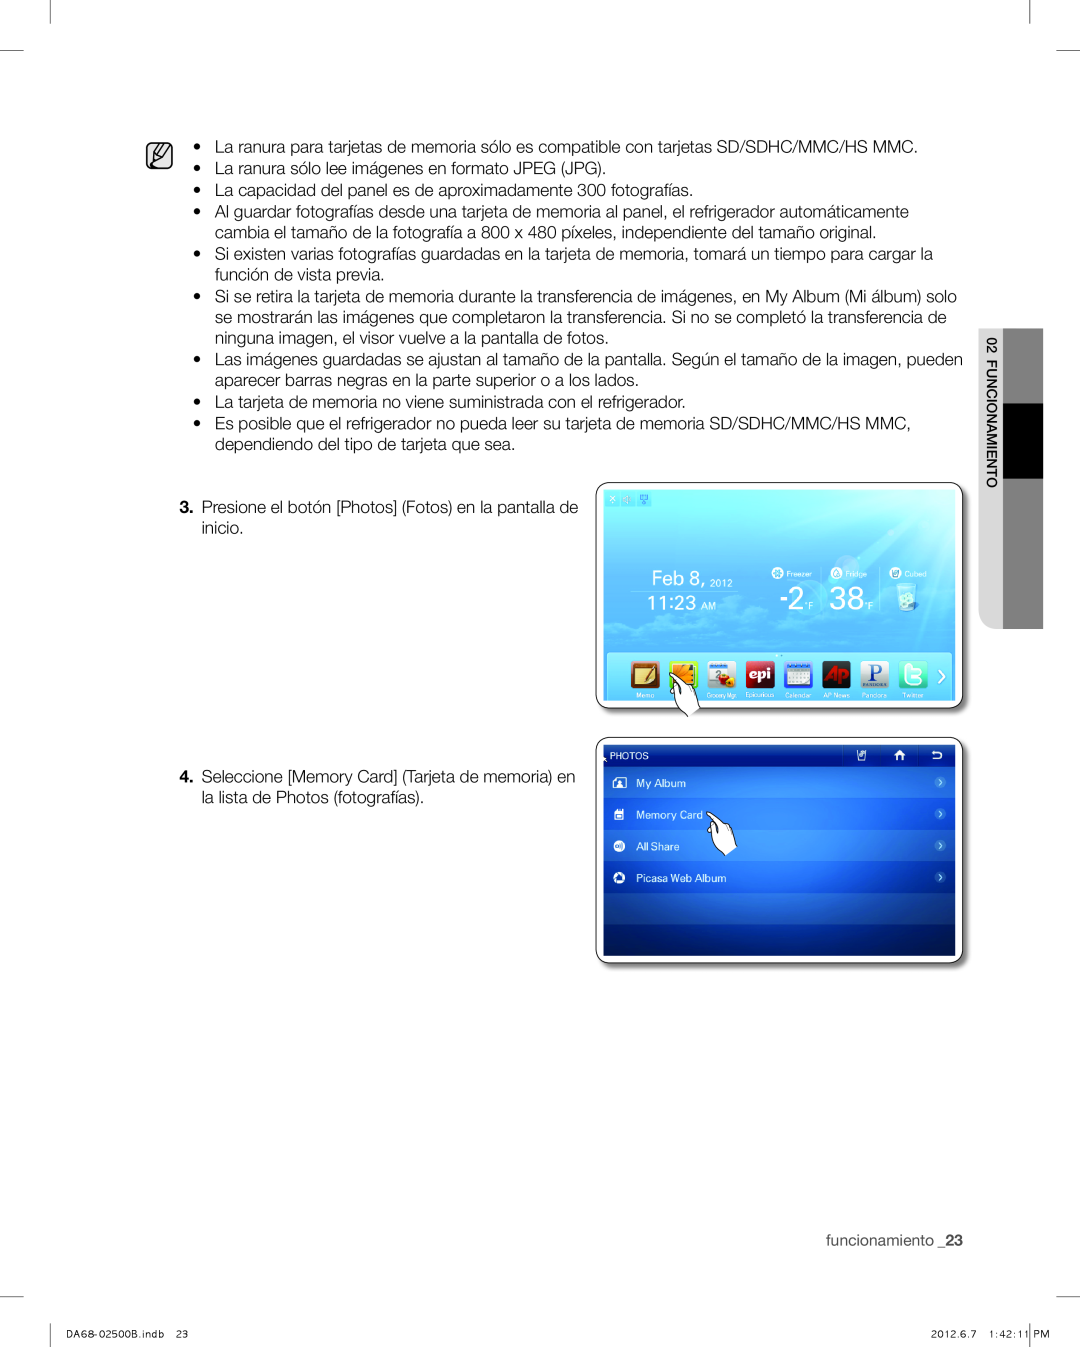 Samsung RSG309AARS user manual La ranura sólo lee imágenes en formato JPEG JPG 